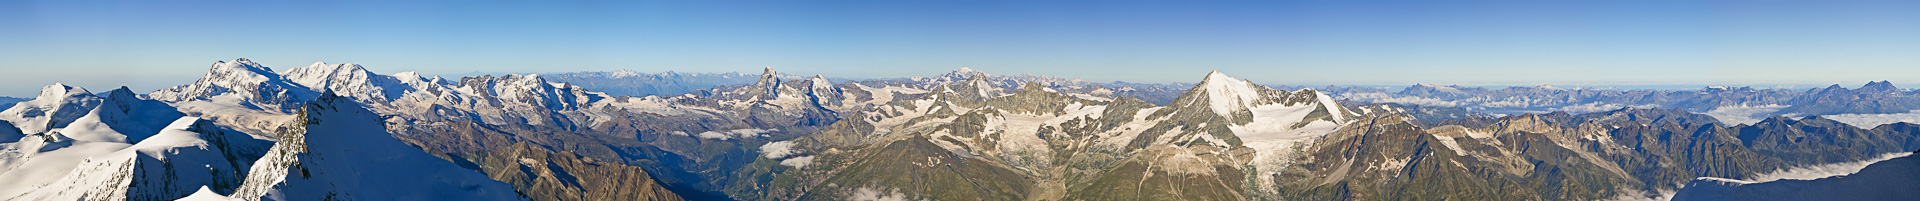 Gipfelpanorama: Walliser Alpen mit Cima Argentera, Monte Viso und Gran Paradiso.